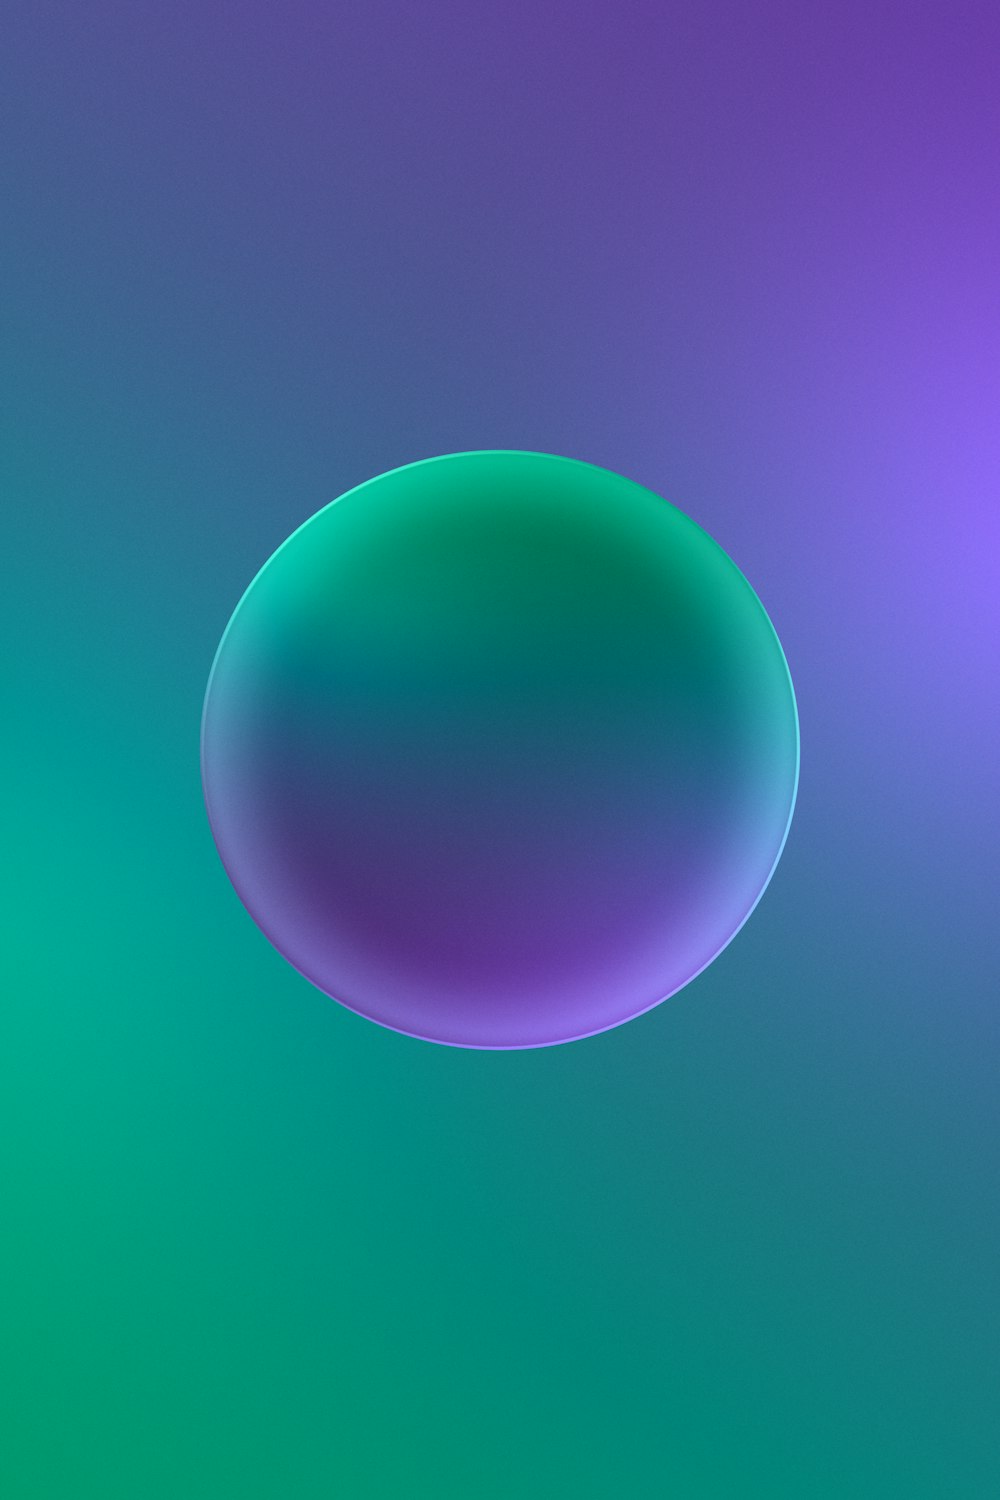 une image floue d’une bulle bleue et verte